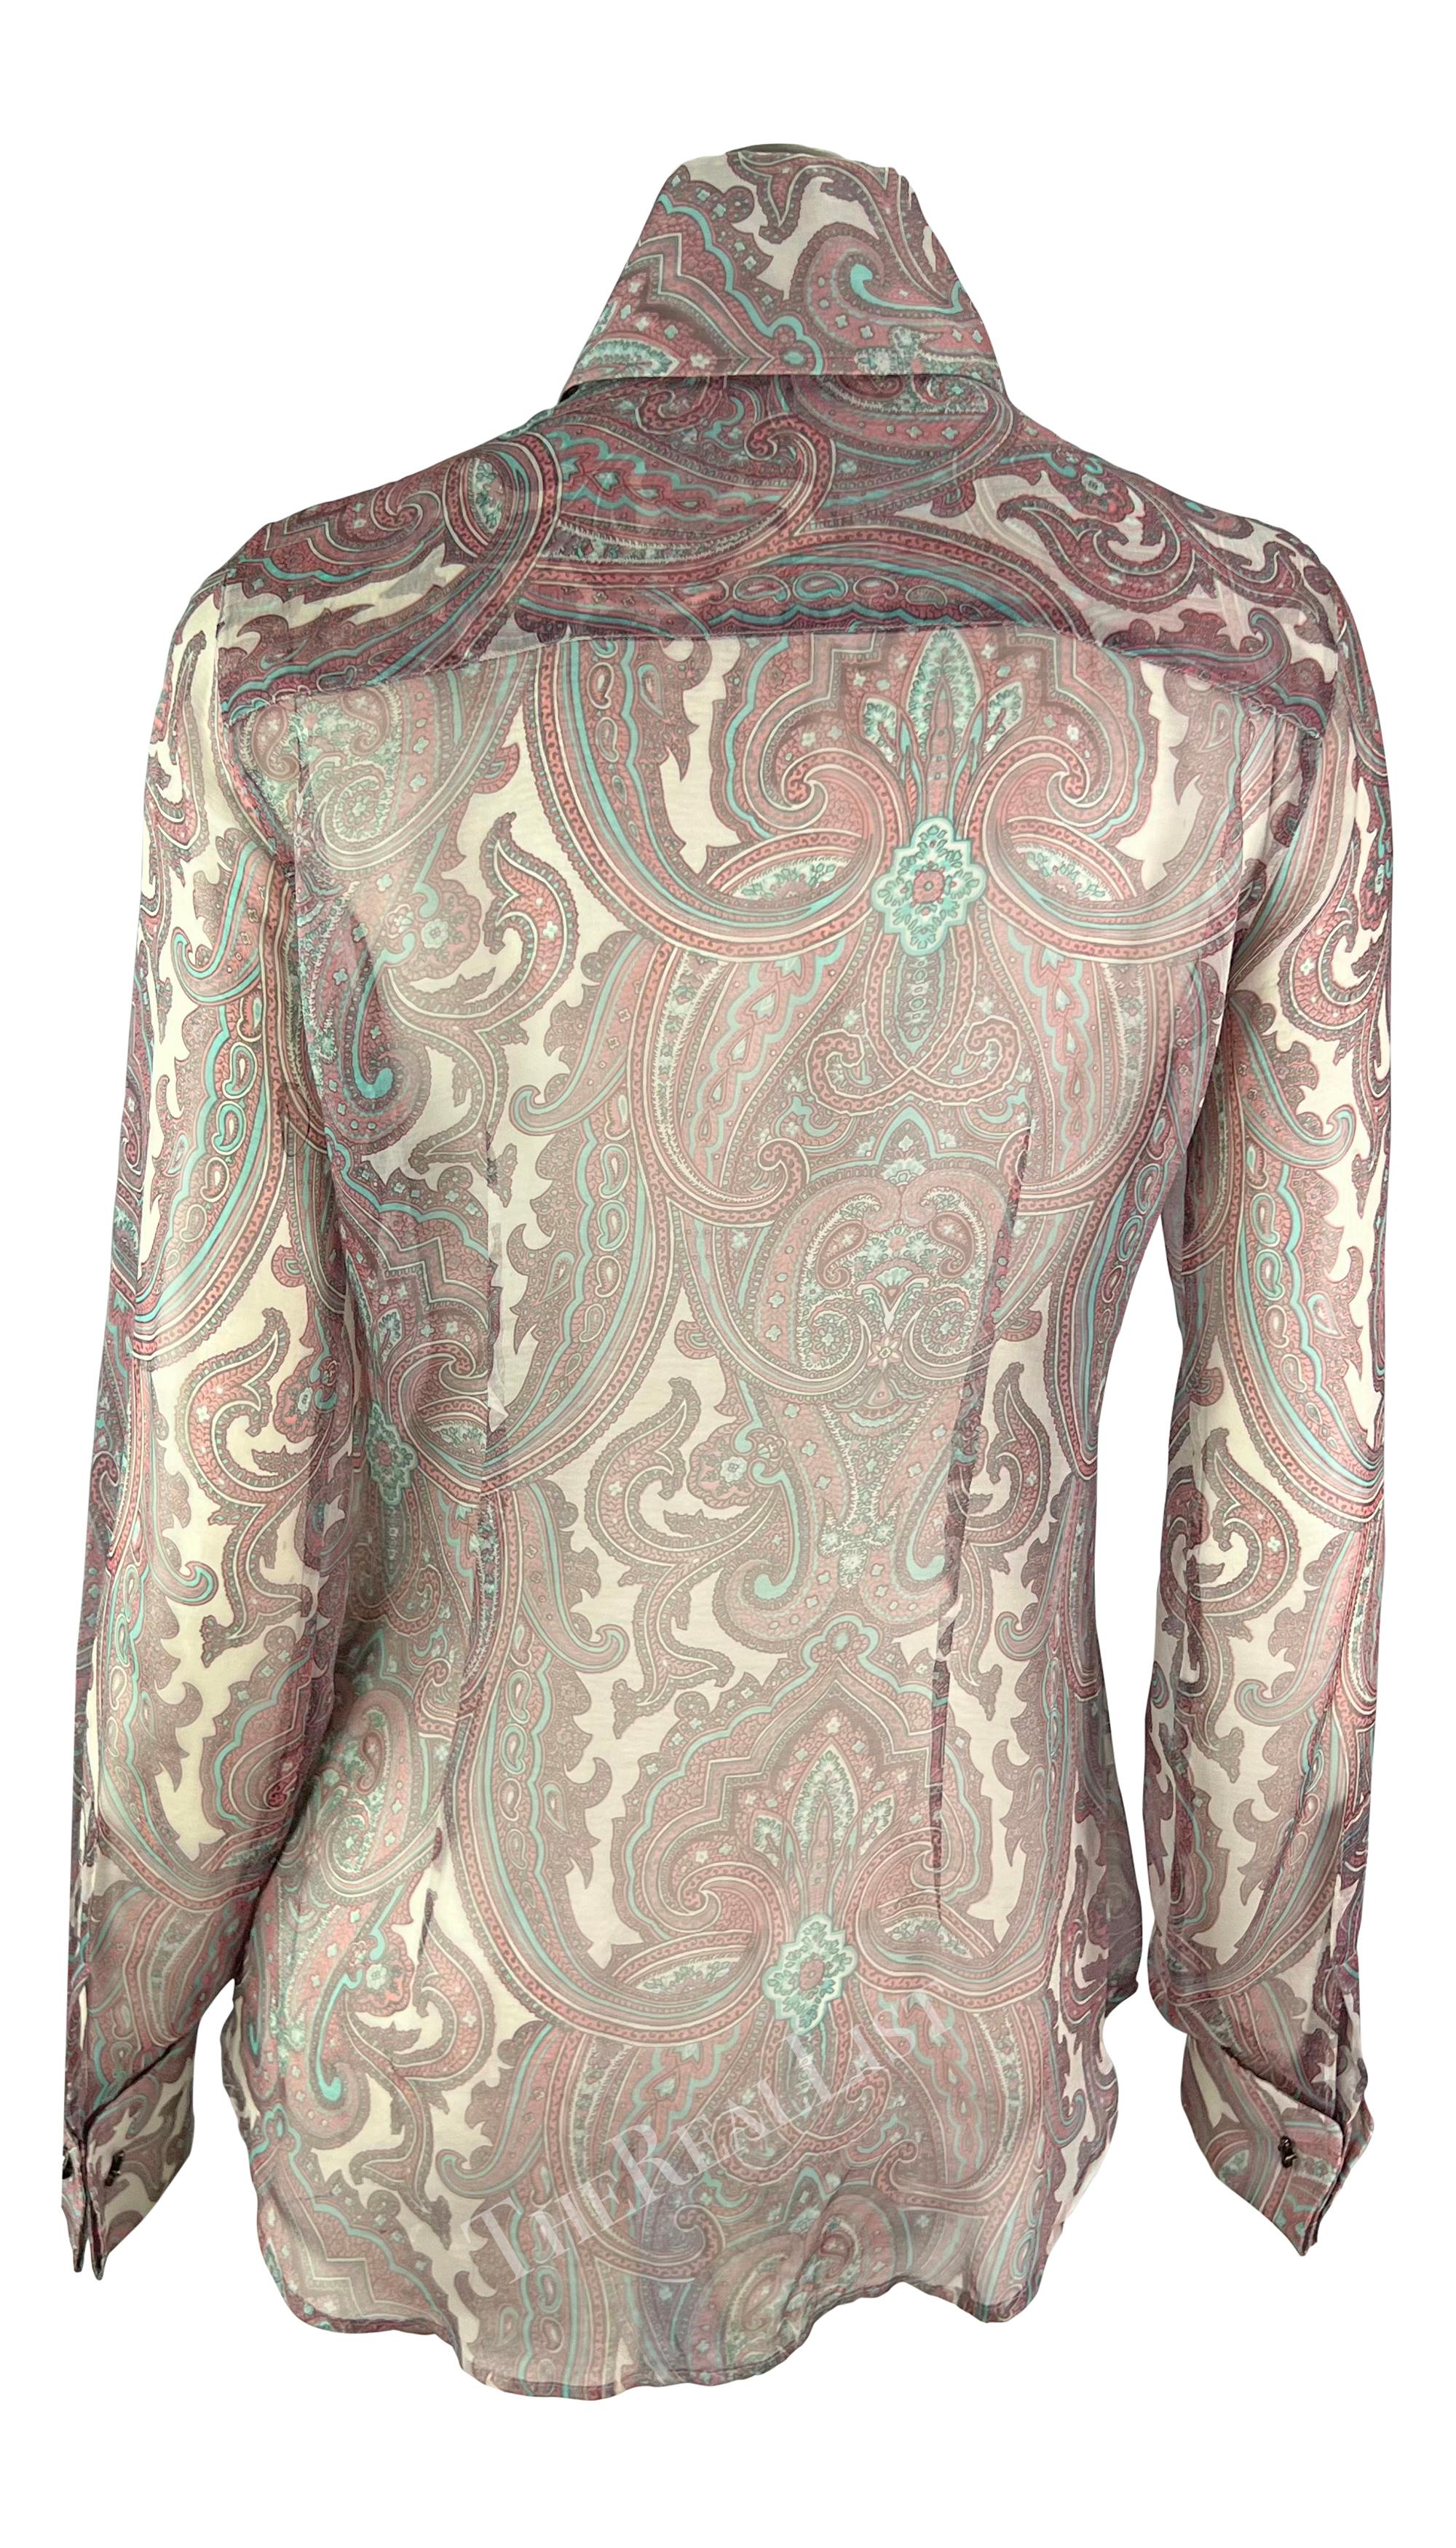 S/S 2000 Dolce & Gabbana Pink Paisley Sheer Button Rhinestone Cuff Shirt For Sale 5